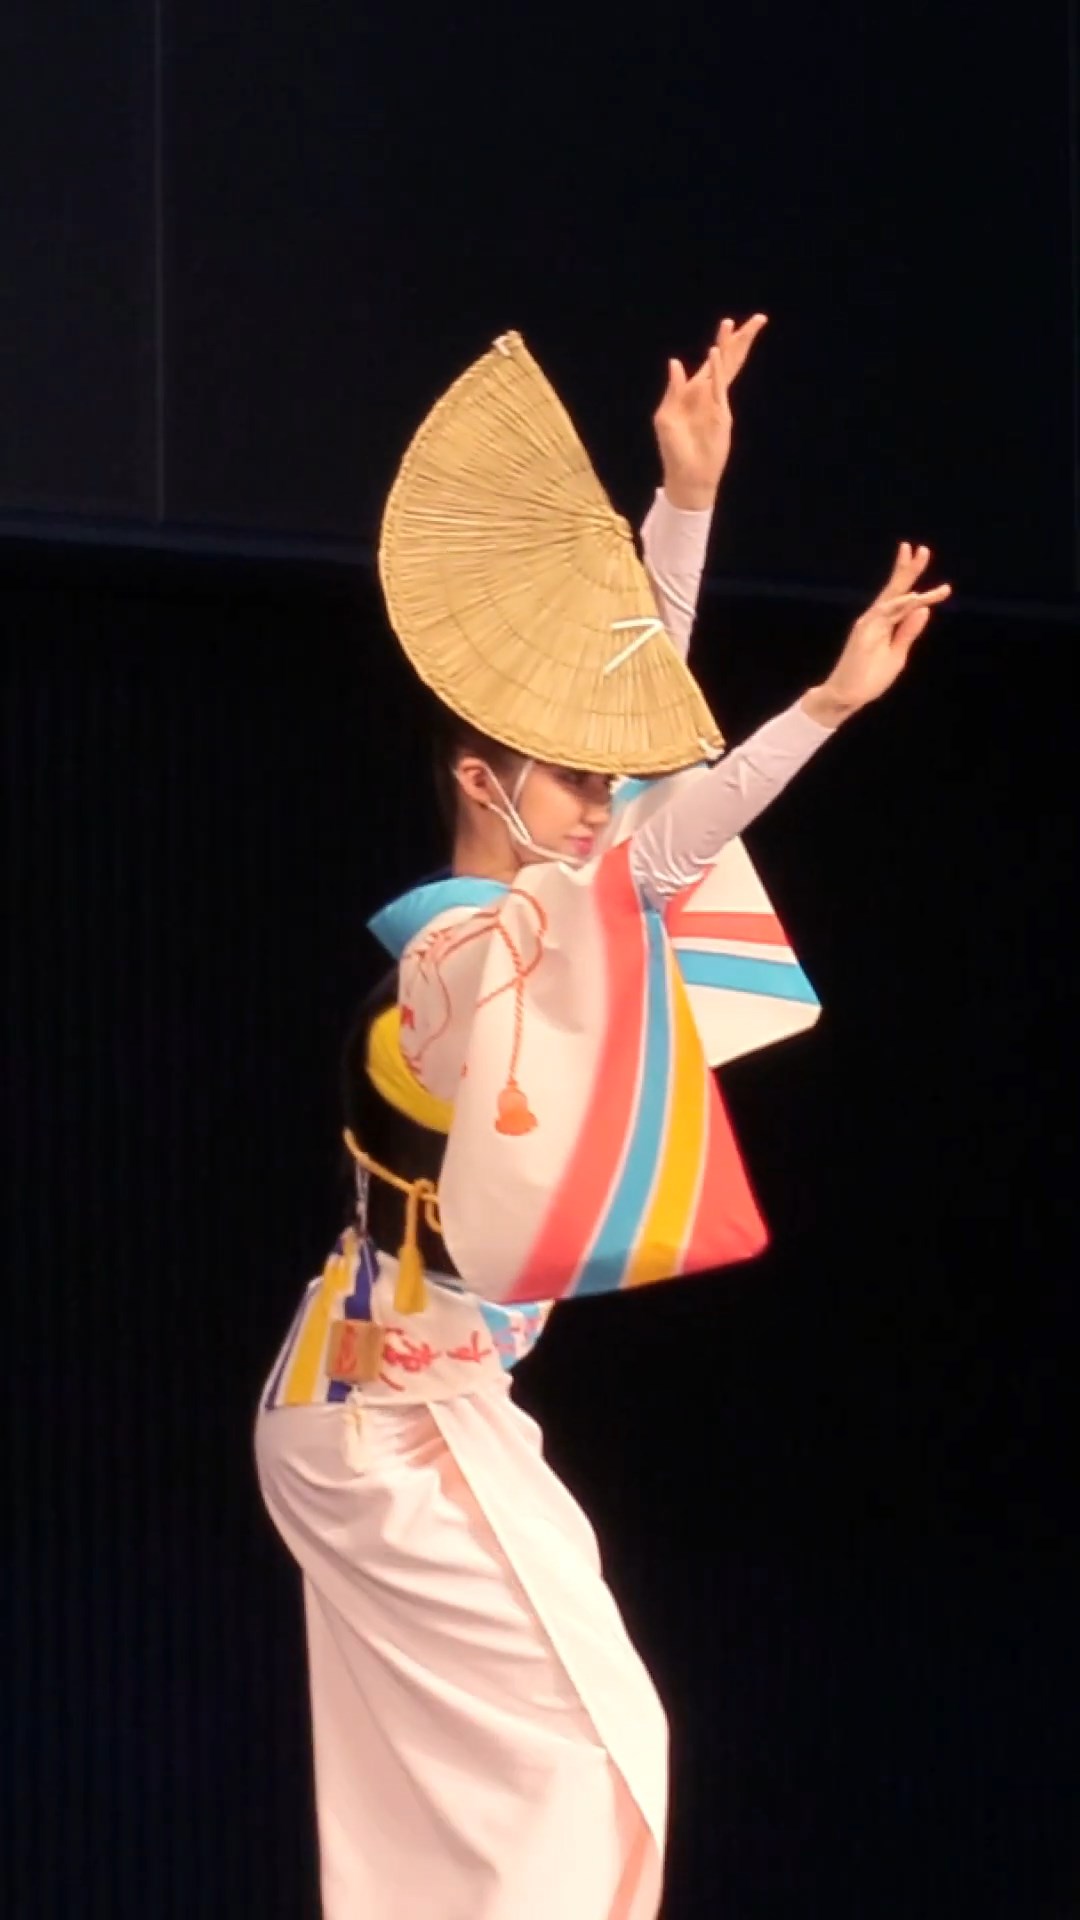 [阿波踊り] 手練れの美人踊り手さんによるレッスン❗️ 秋の阿波おどり Awaodori 女踊り.jpg